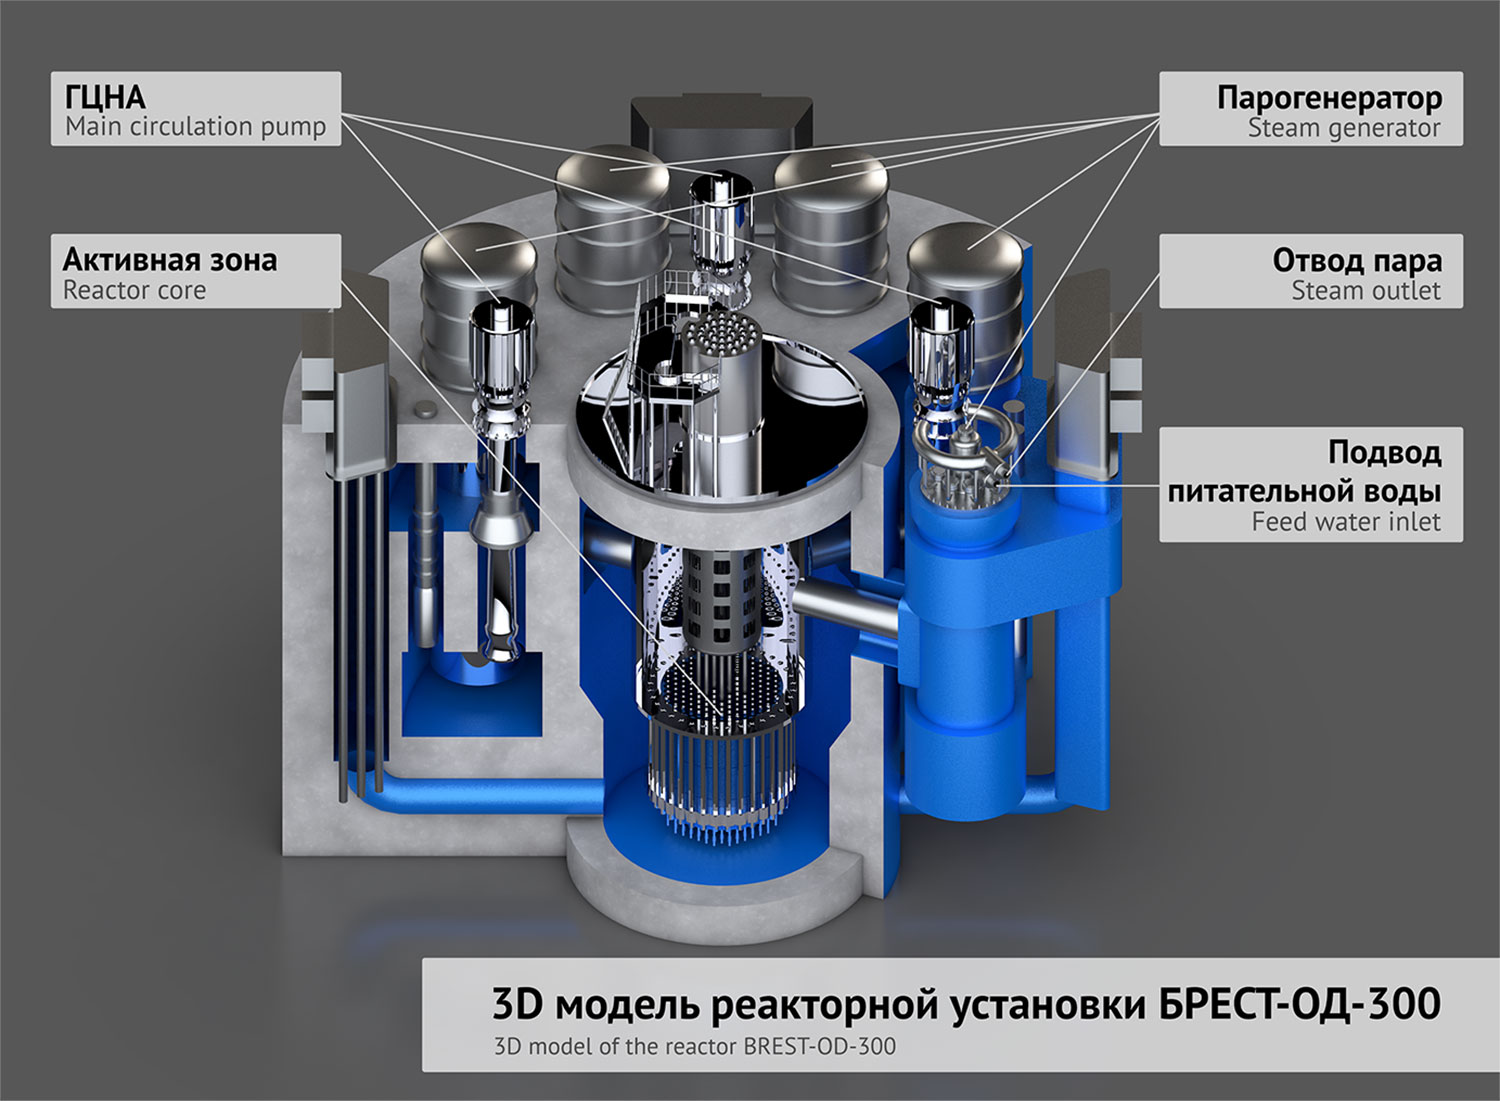 Ядерный реактор Брест-од-300